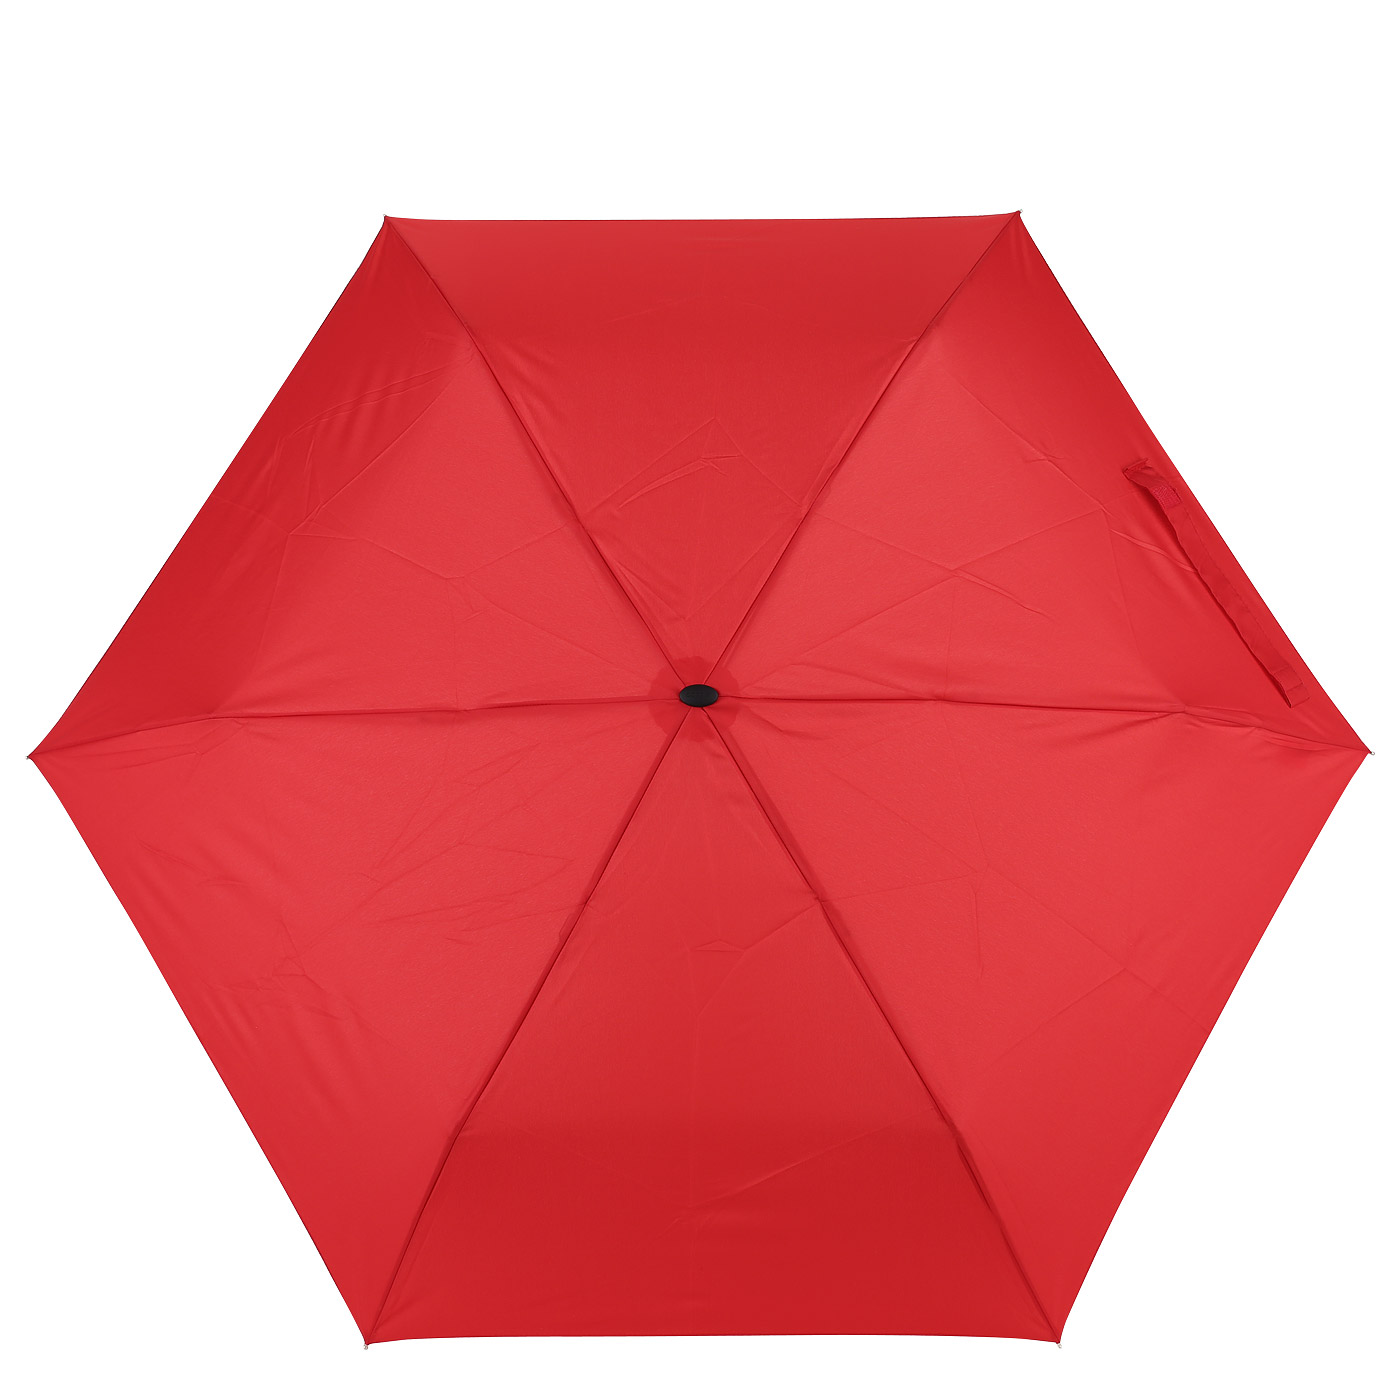 Механический компактный зонт Doppler Uni Slim